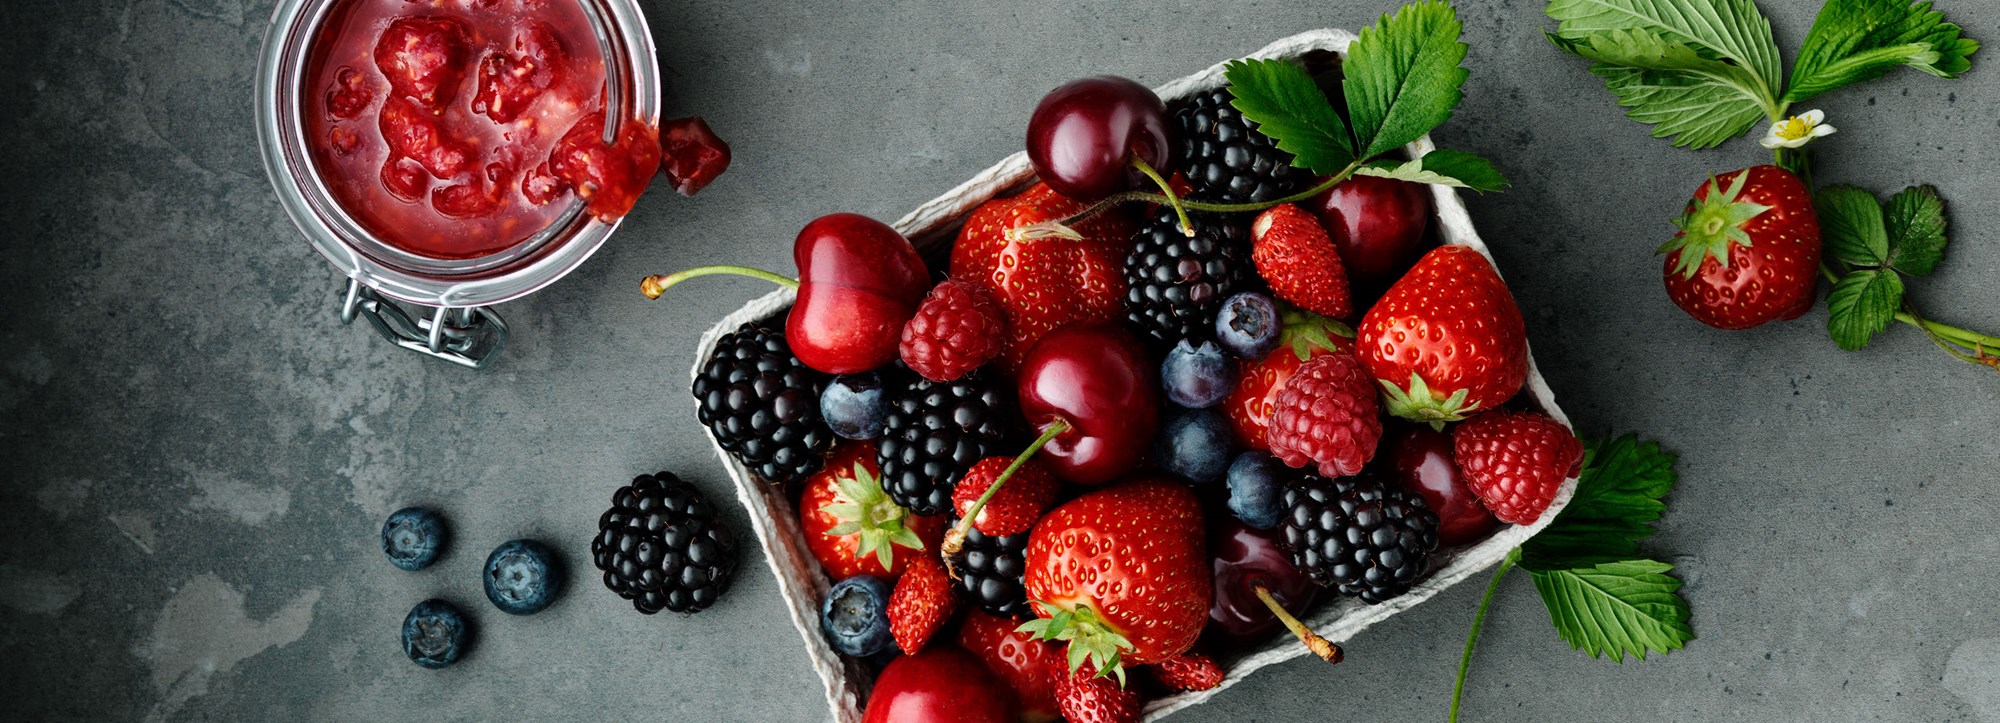 Must – en frisk favorit av druvor, bär eller frukt 